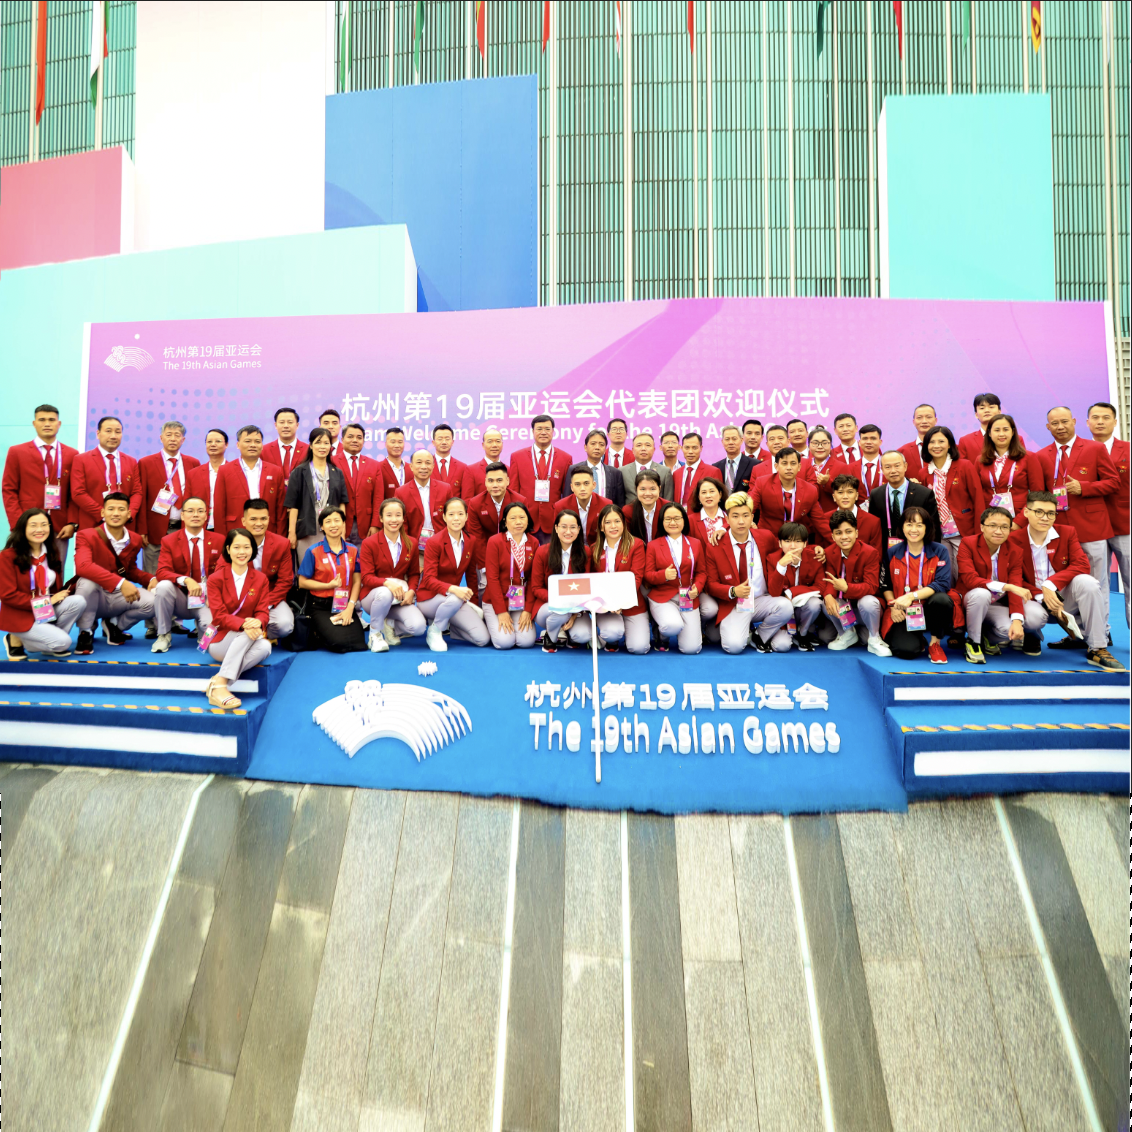 Lãnh đạo Bộ Văn hóa, Thể thao và Du lịch Việt Nam dự Lễ khai mạc ASIAD 19 và Lễ ký Thỏa thuận hợp tác phòng, chống Doping